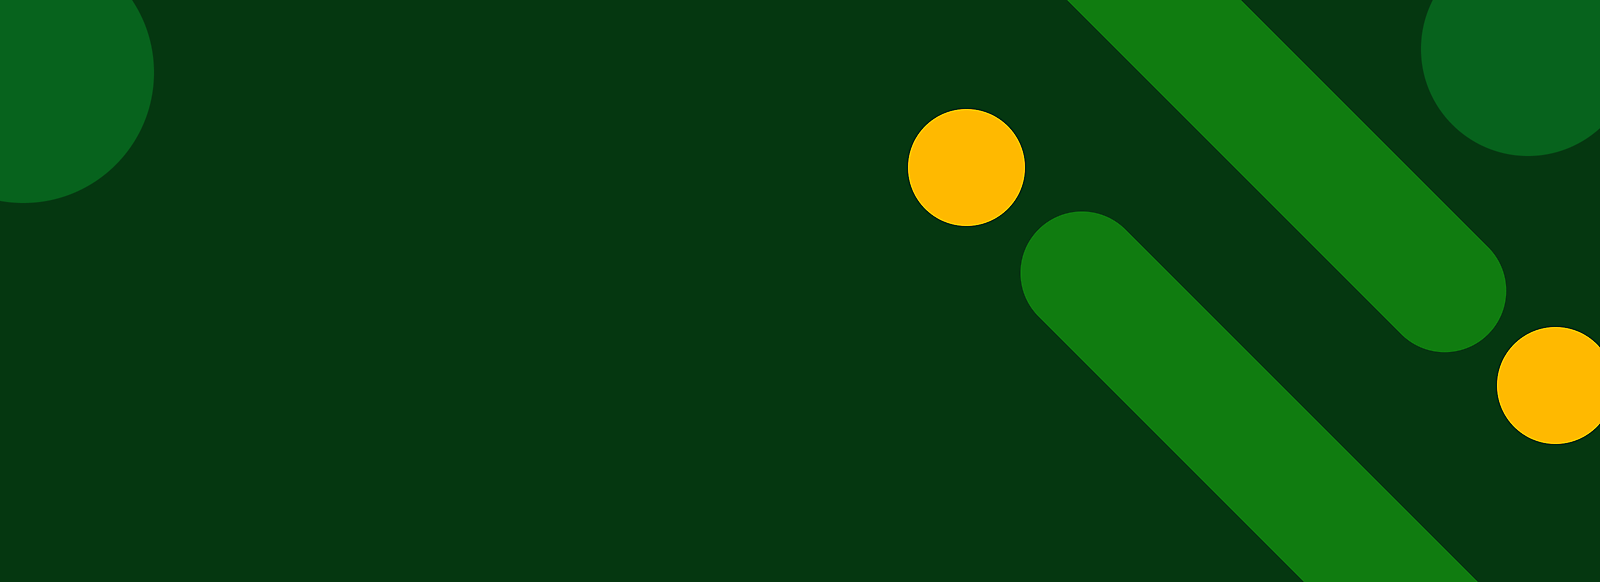 노란색 점과 대각선 녹색 줄무늬가 있는 추상적인 녹색 배경.